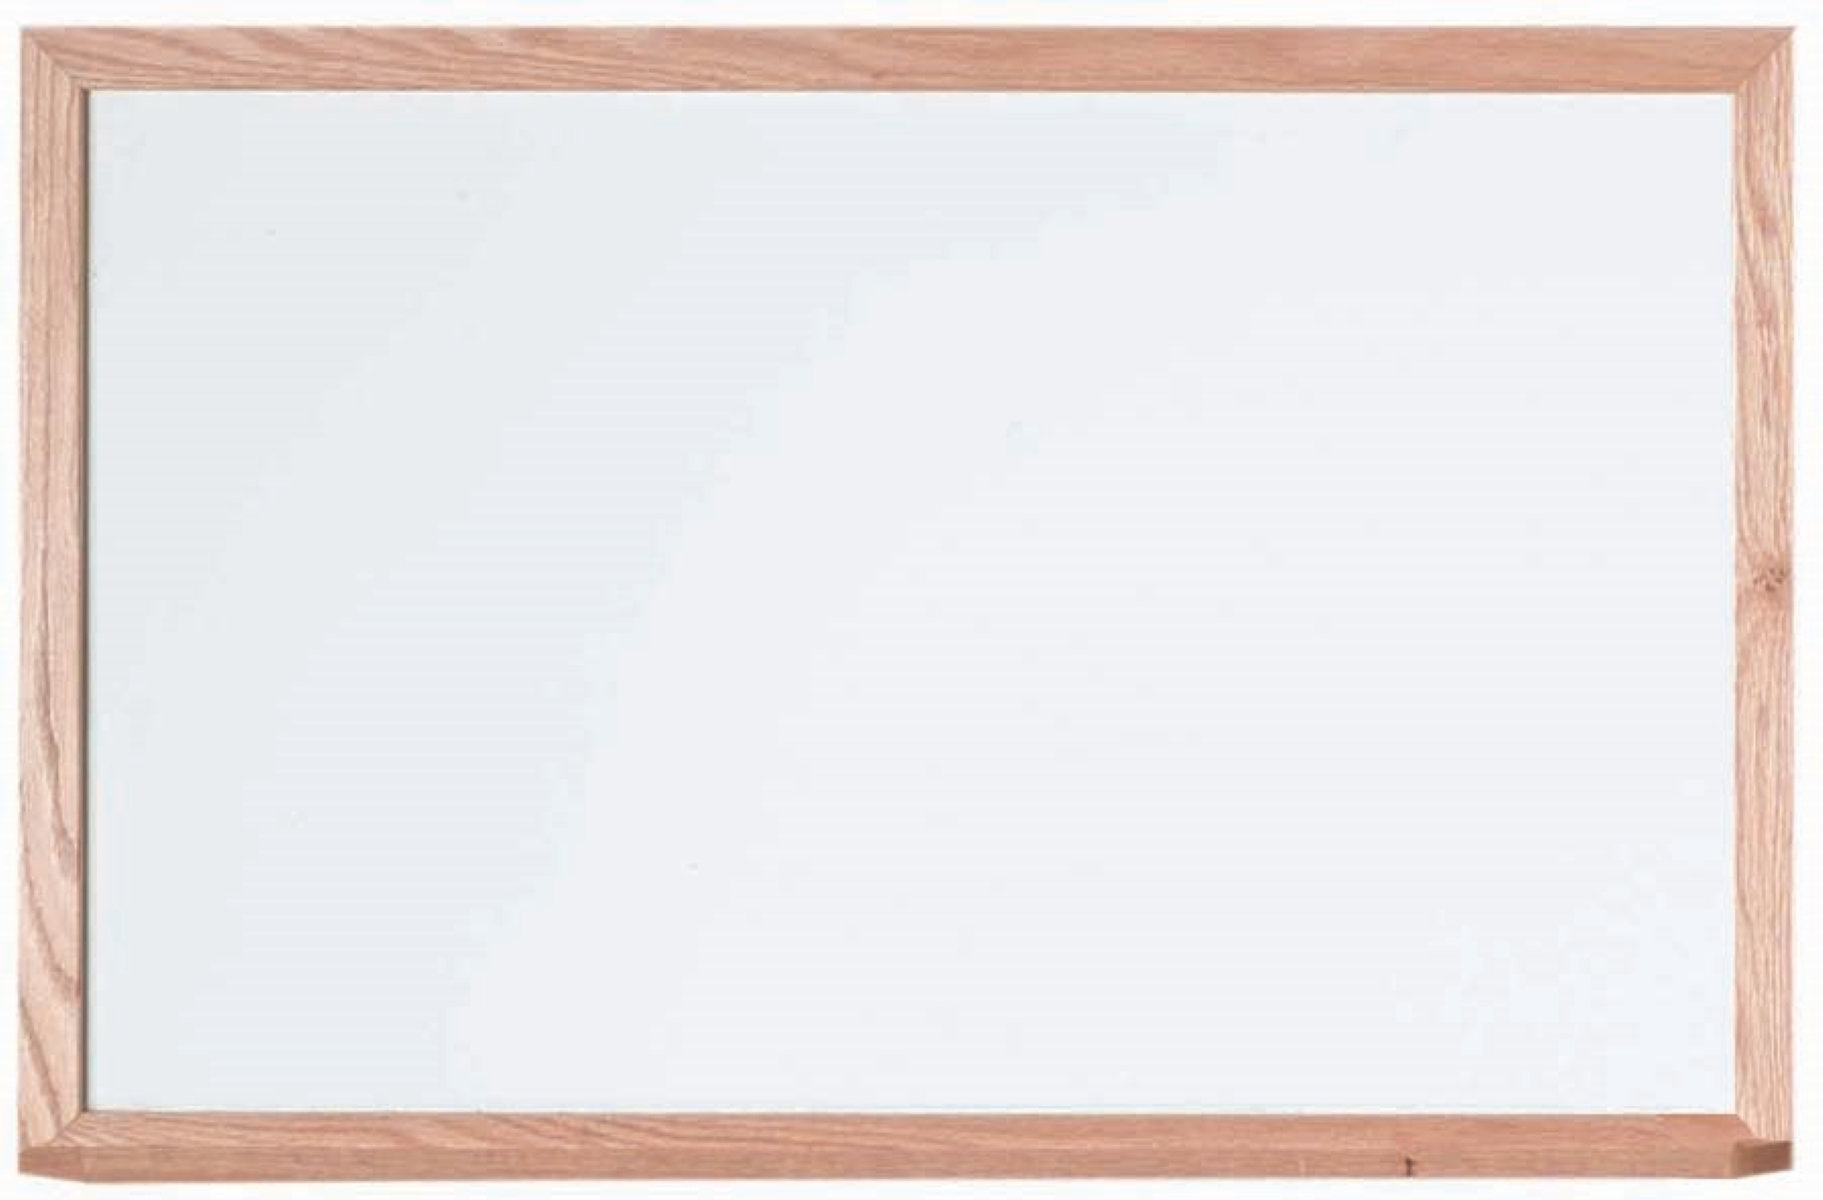 Tableau blanc magnétique effaçable à sec en porcelaine avec cadre en  aluminium Viztex, 36 po x 24 po